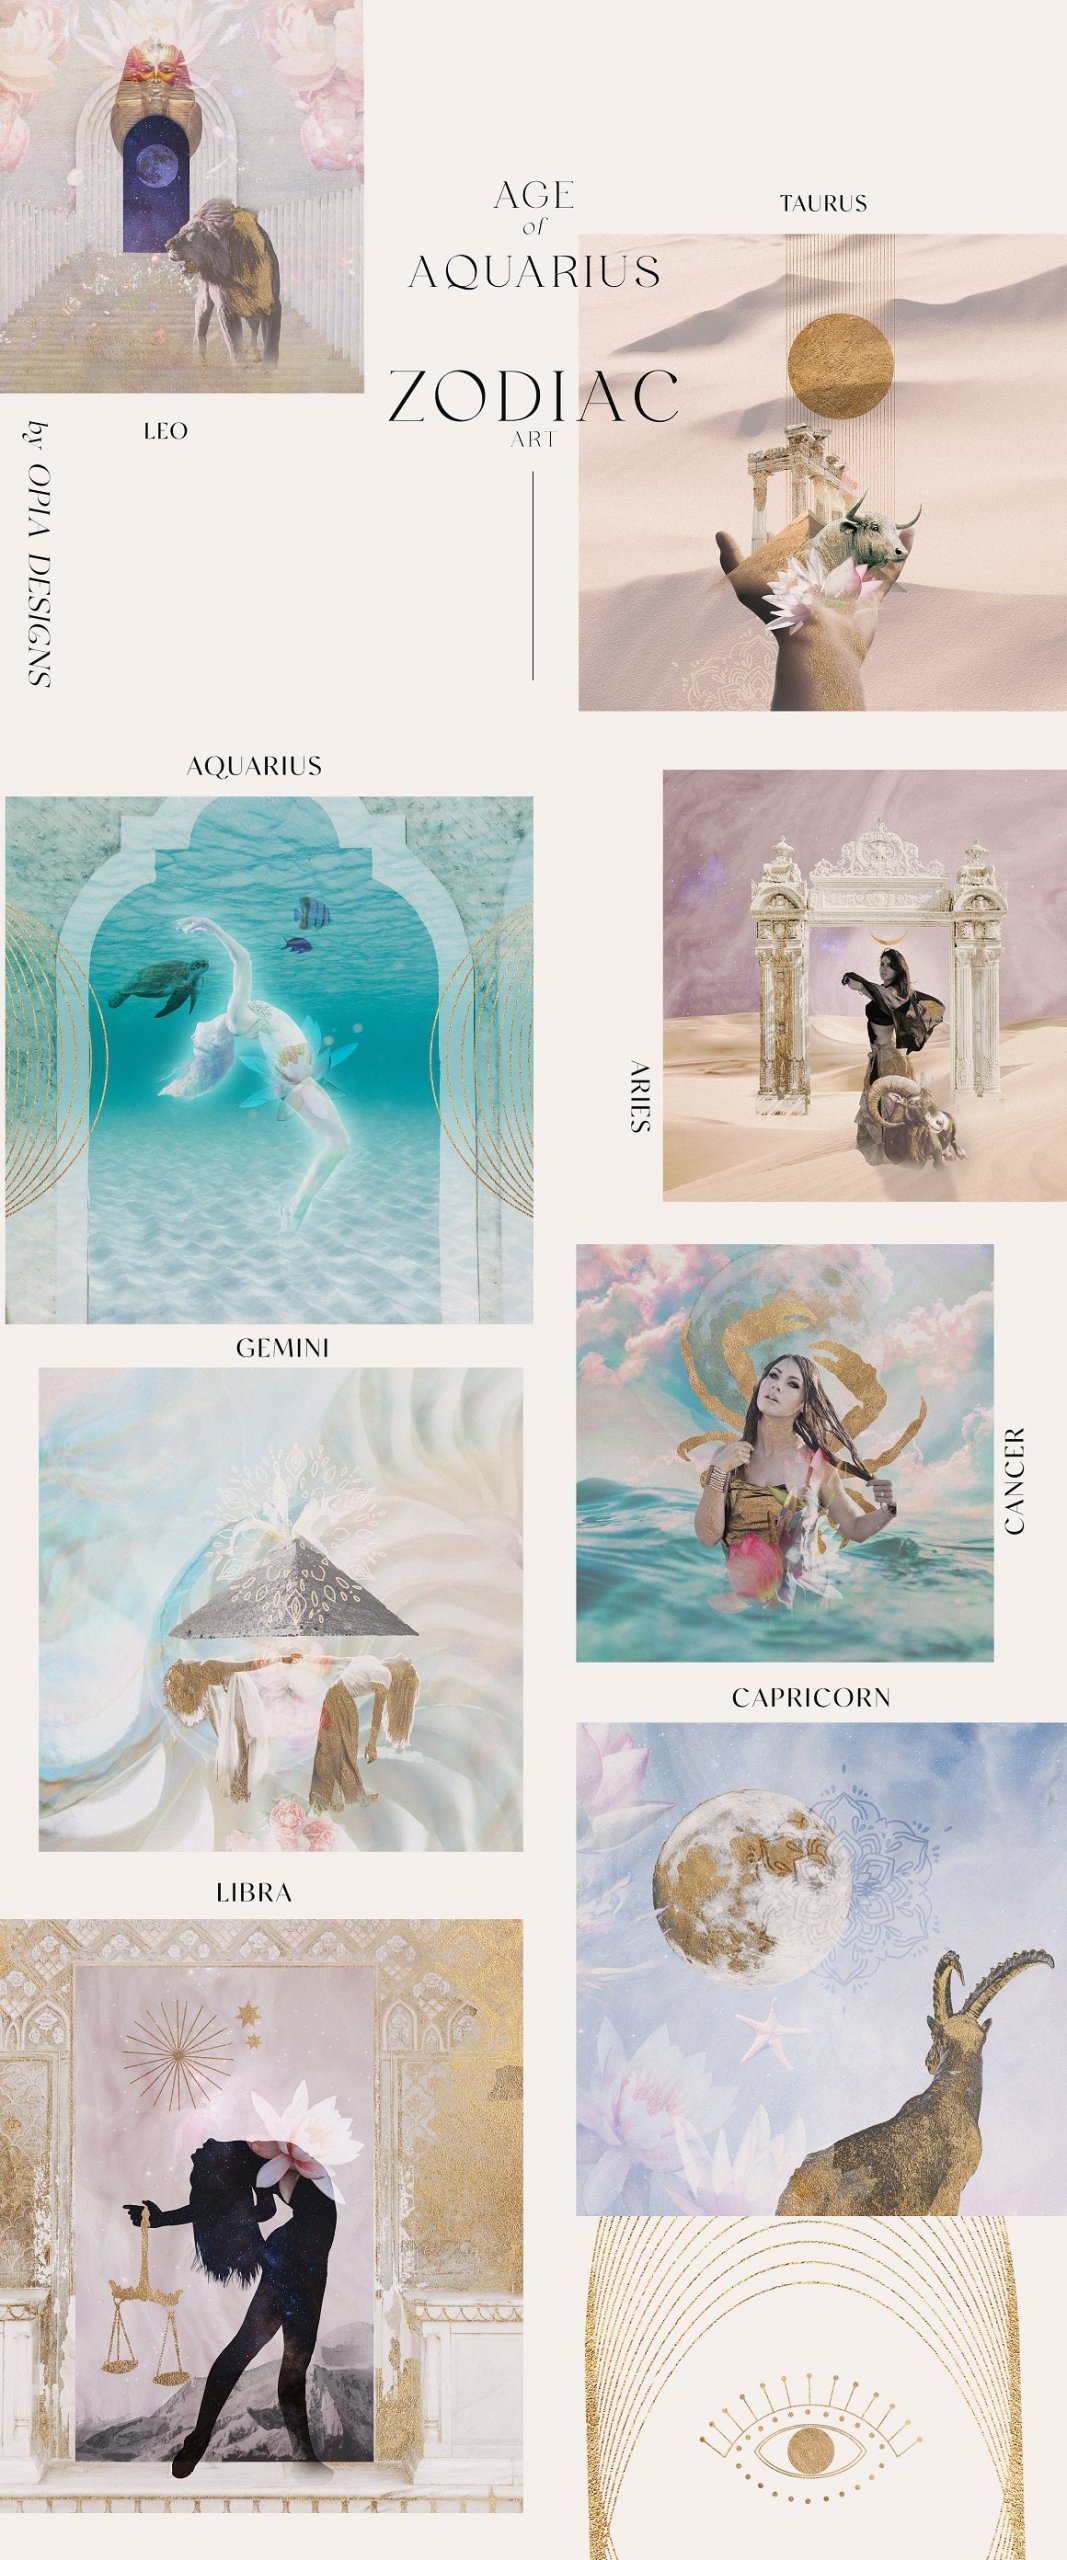 Age of Aquarius - Mystic Collage